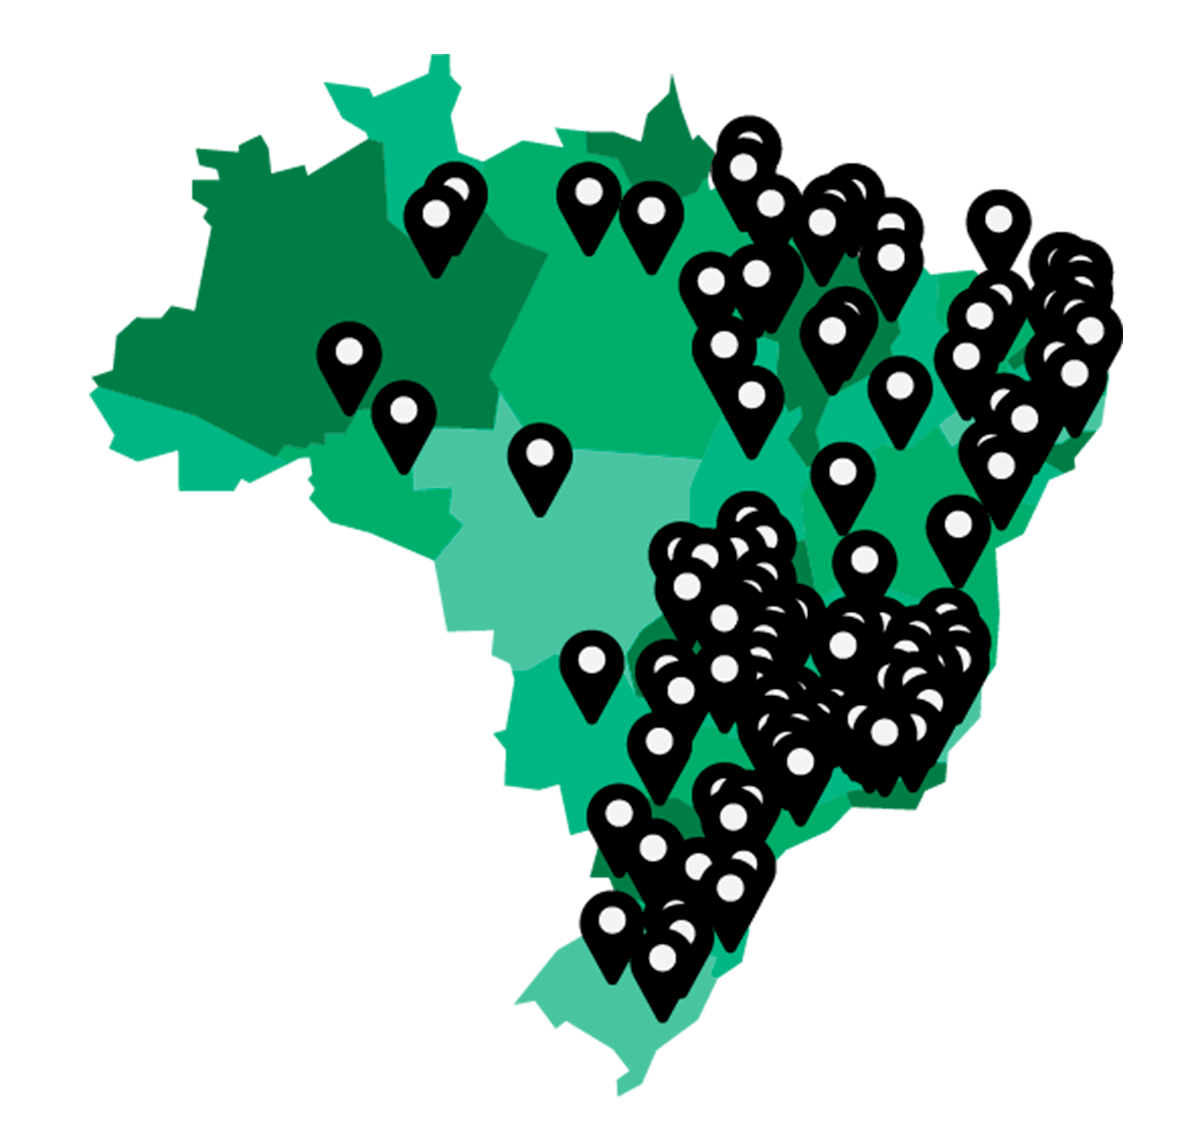 Mapa do Brasil com marcadores indicando os vários locais onde o iScholar atua